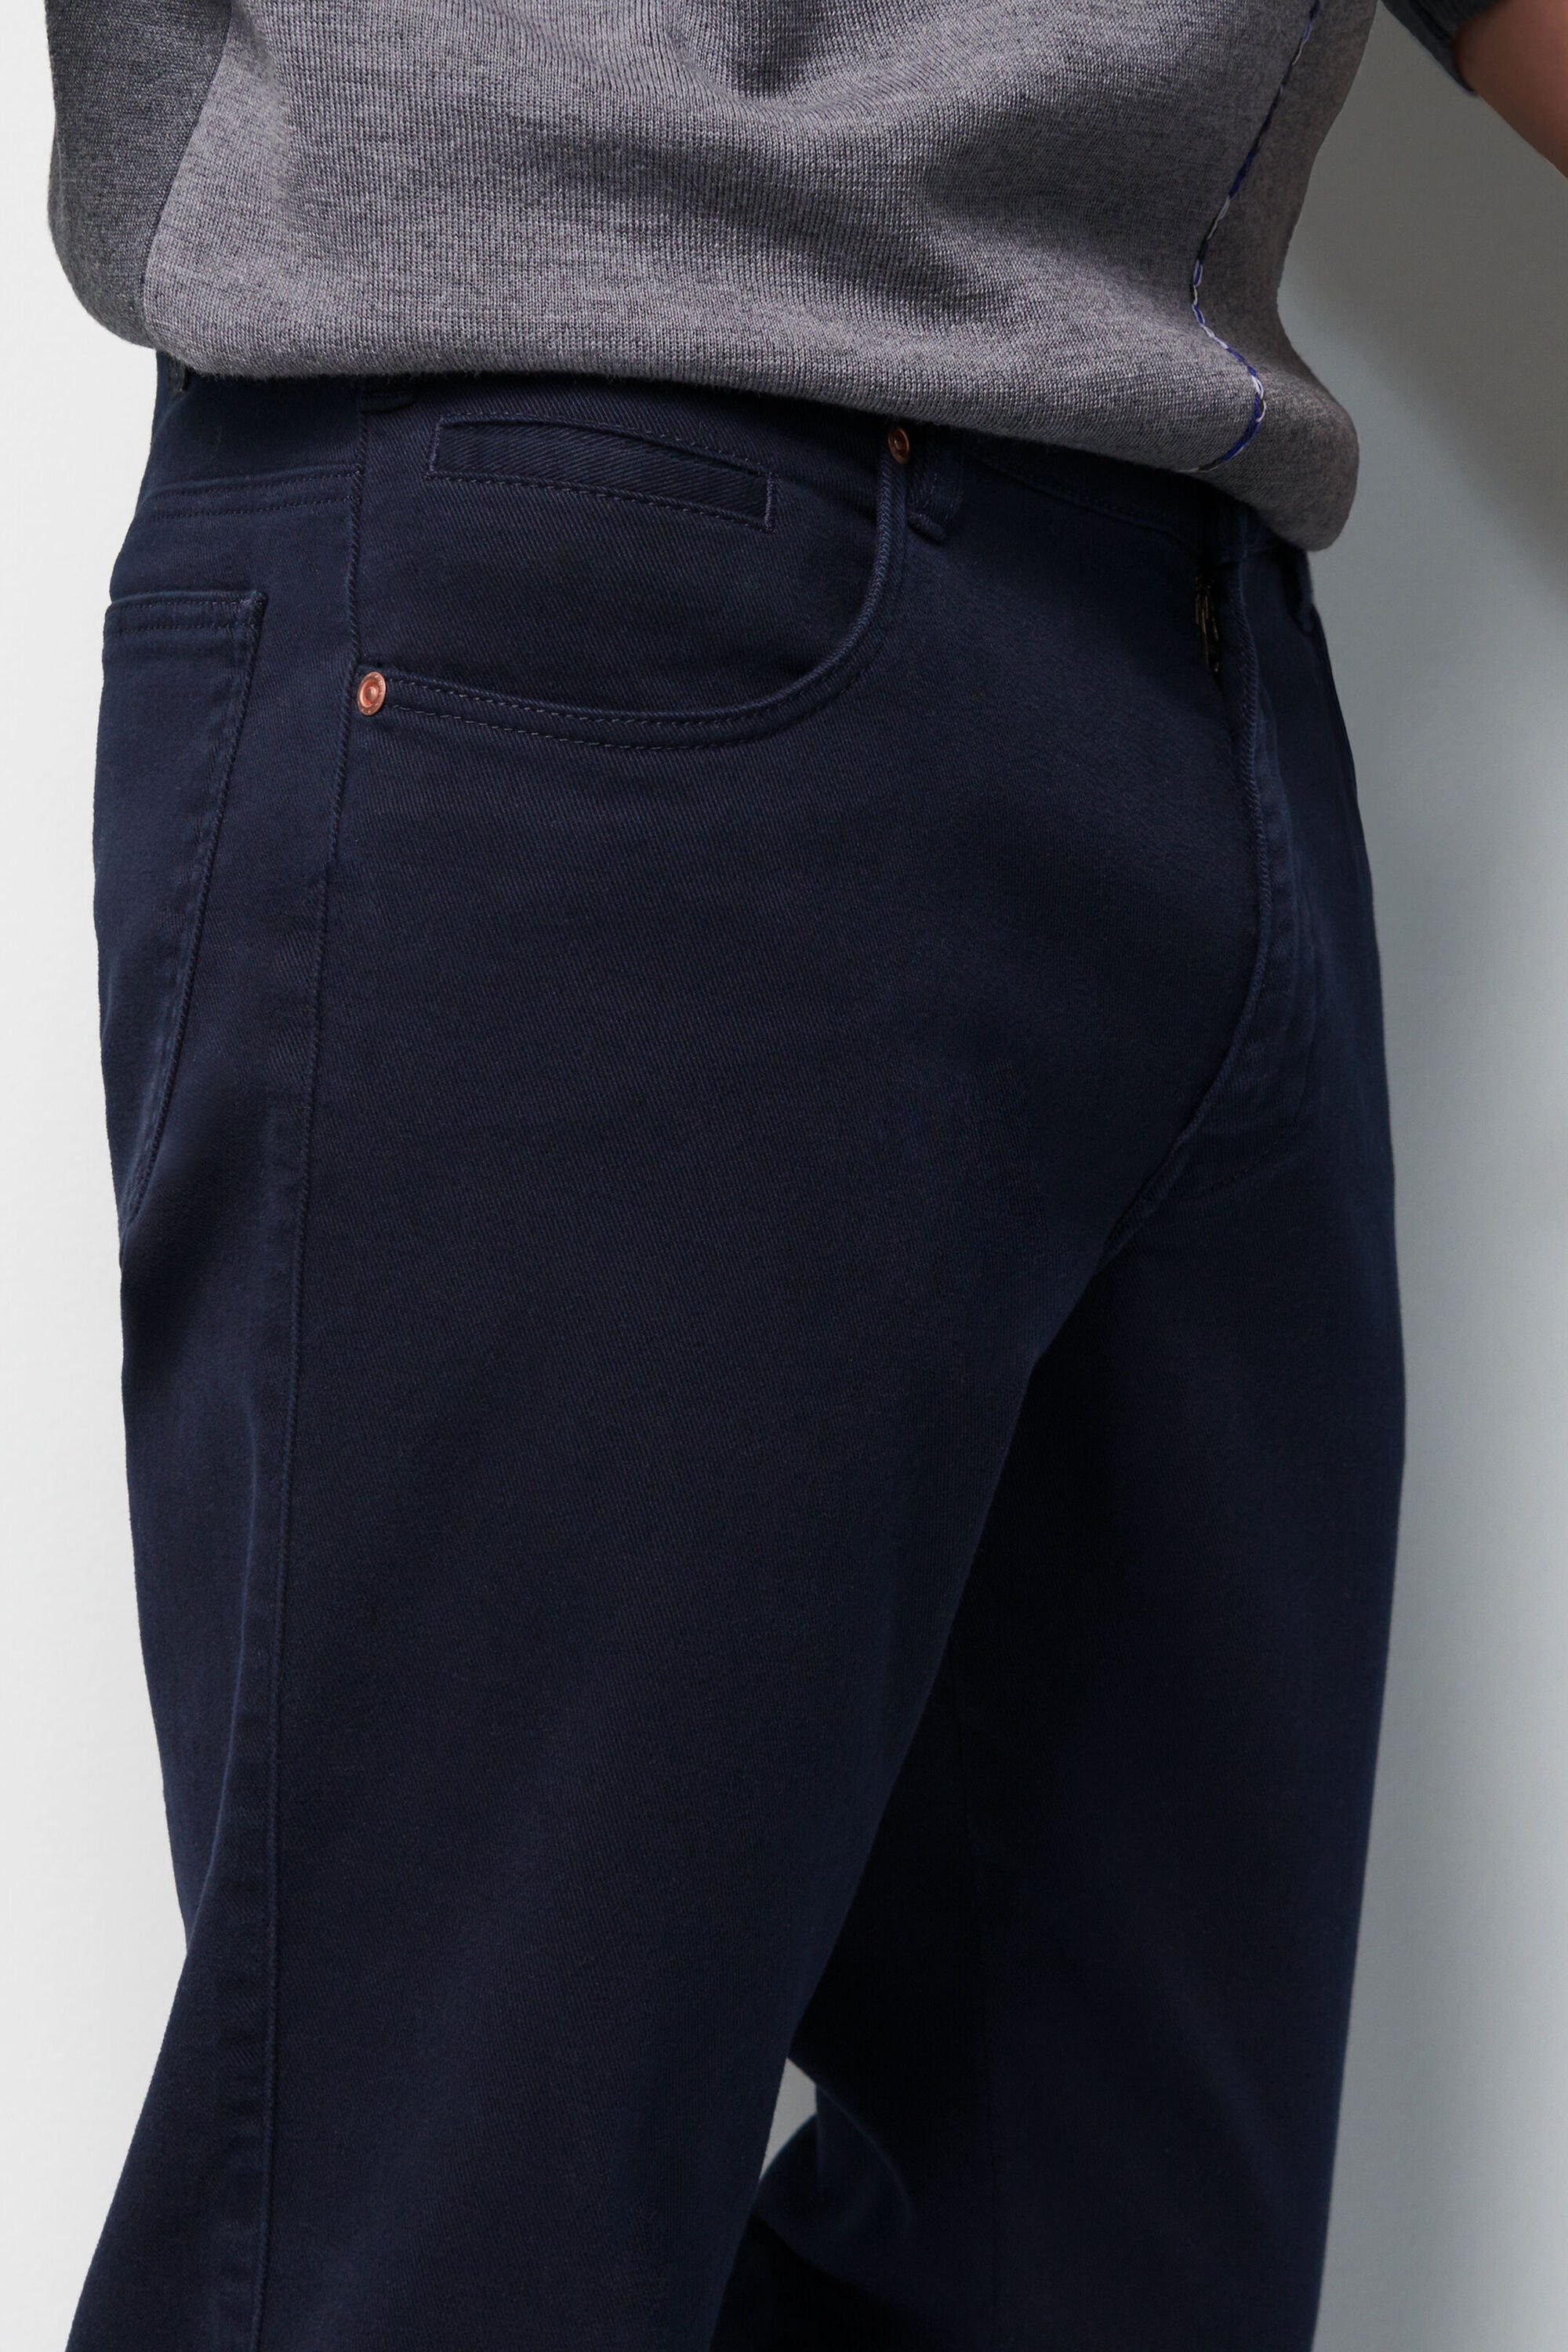 Design unifarbenem marine MEYER im 5-Pocket-Jeans